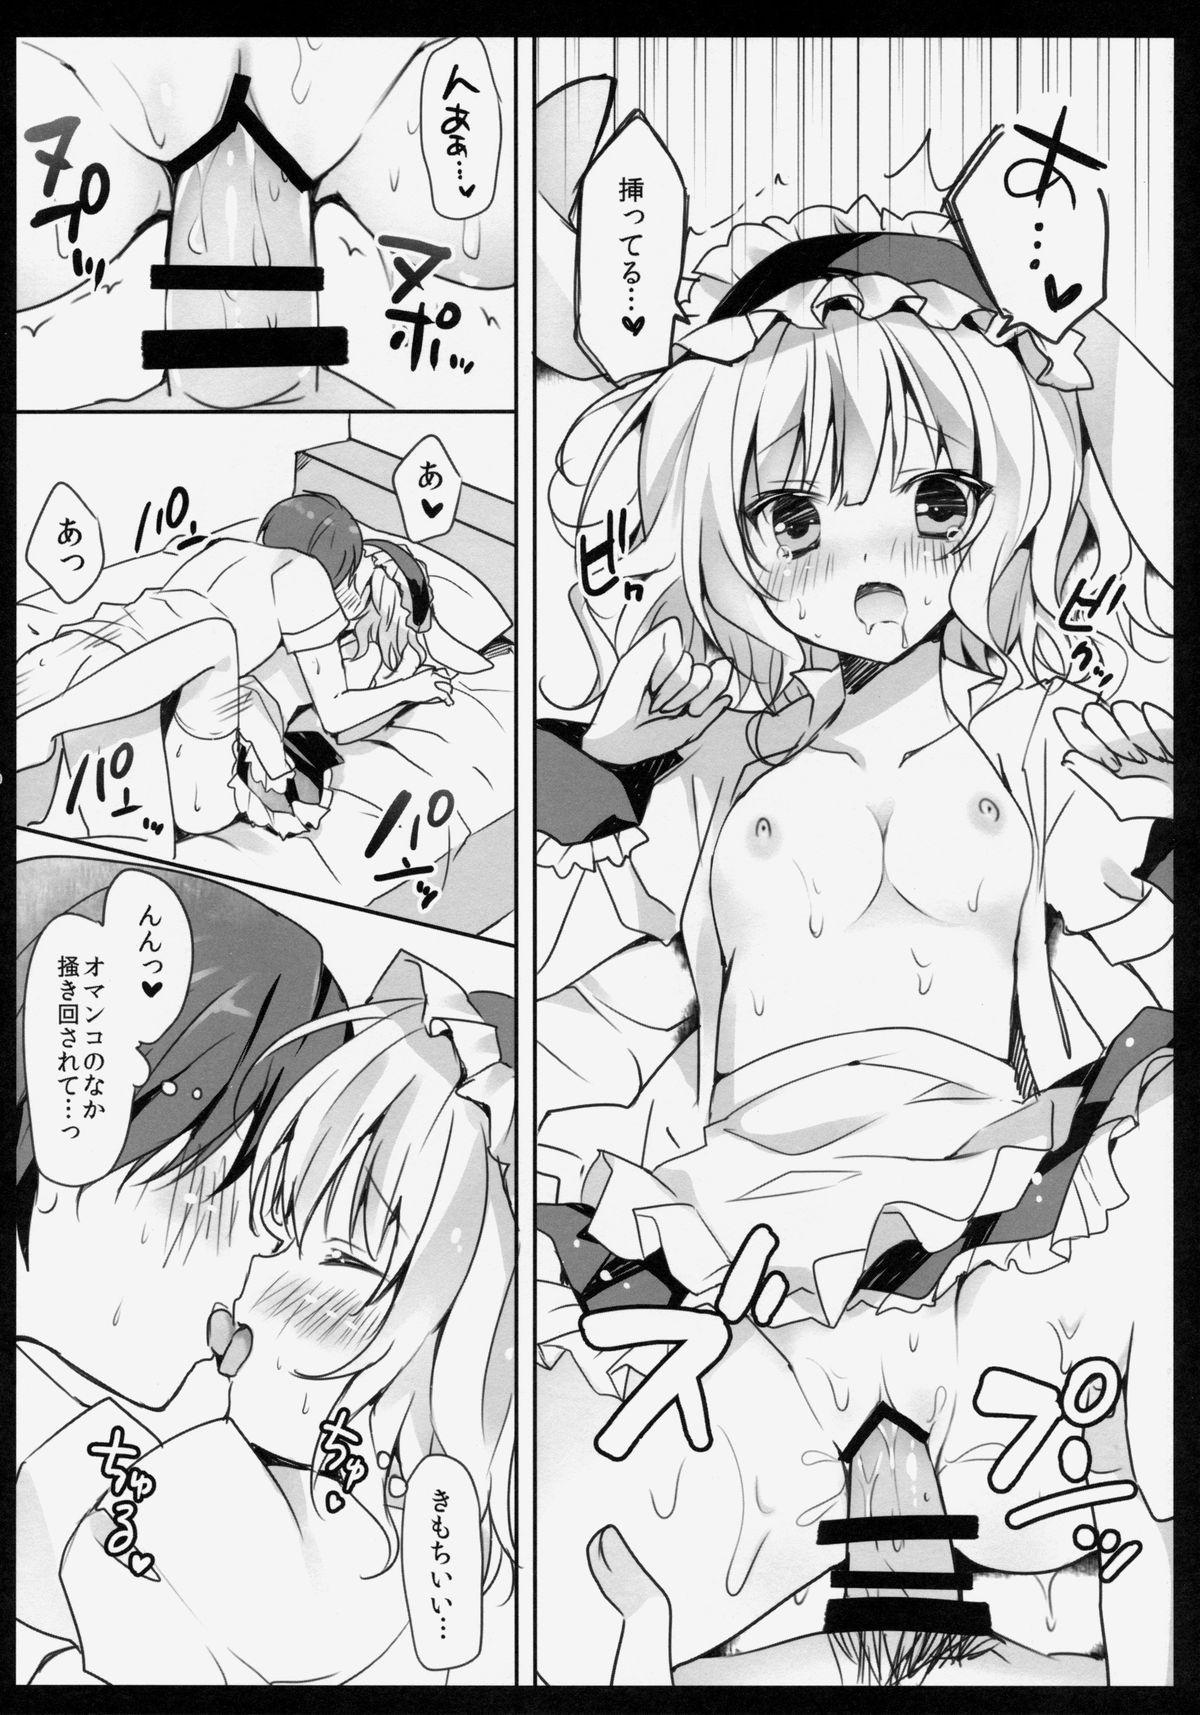 Sextape Gochuumon wa Sharo-chan desu ka? - Gochuumon wa usagi desu ka Nude - Page 9